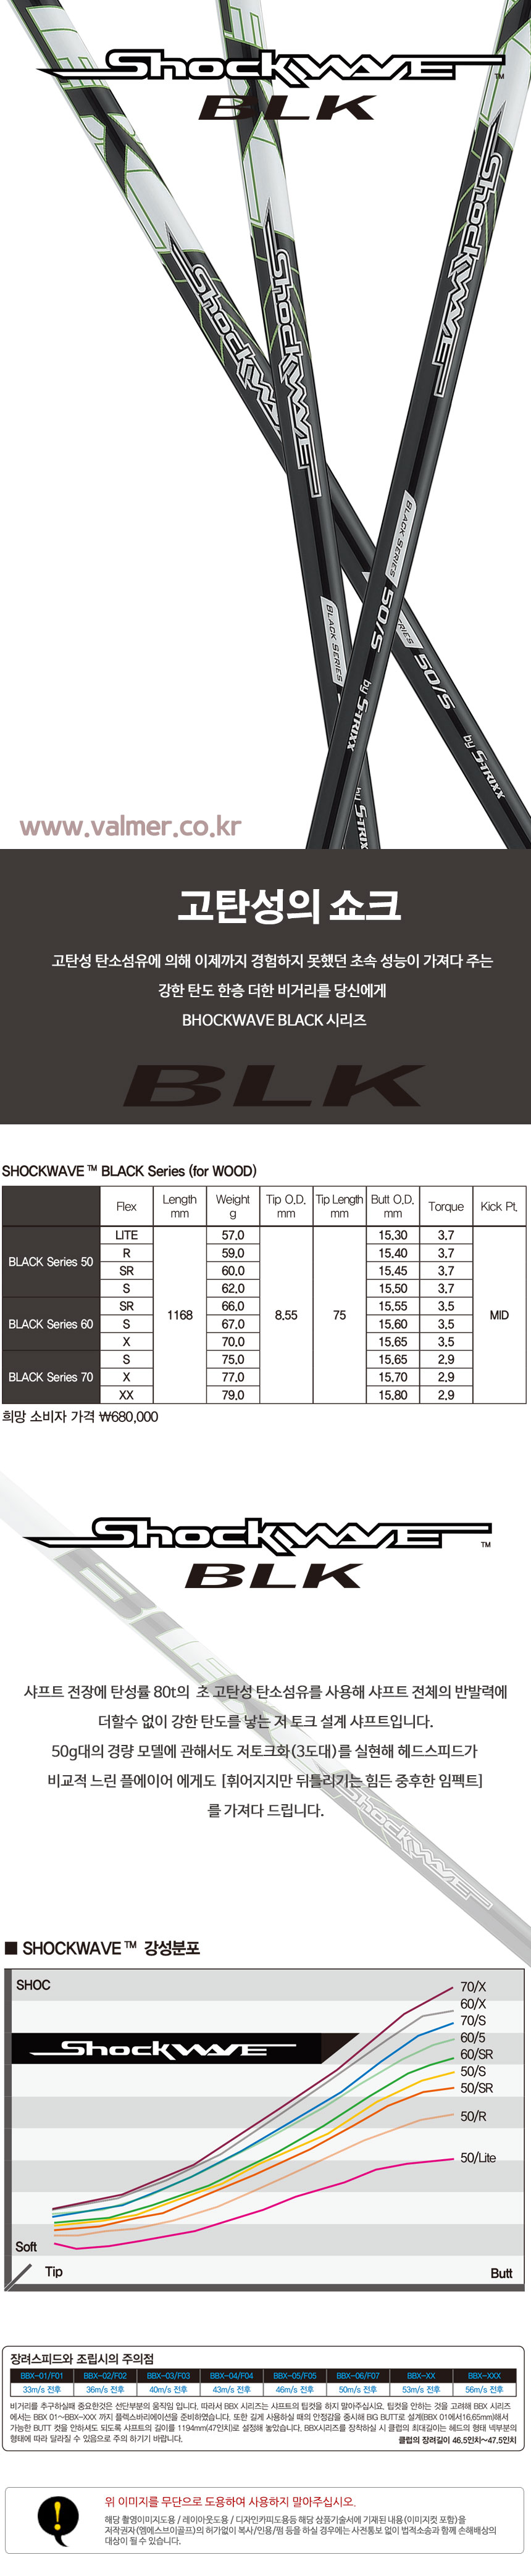 shockwave-black-_163609.jpg